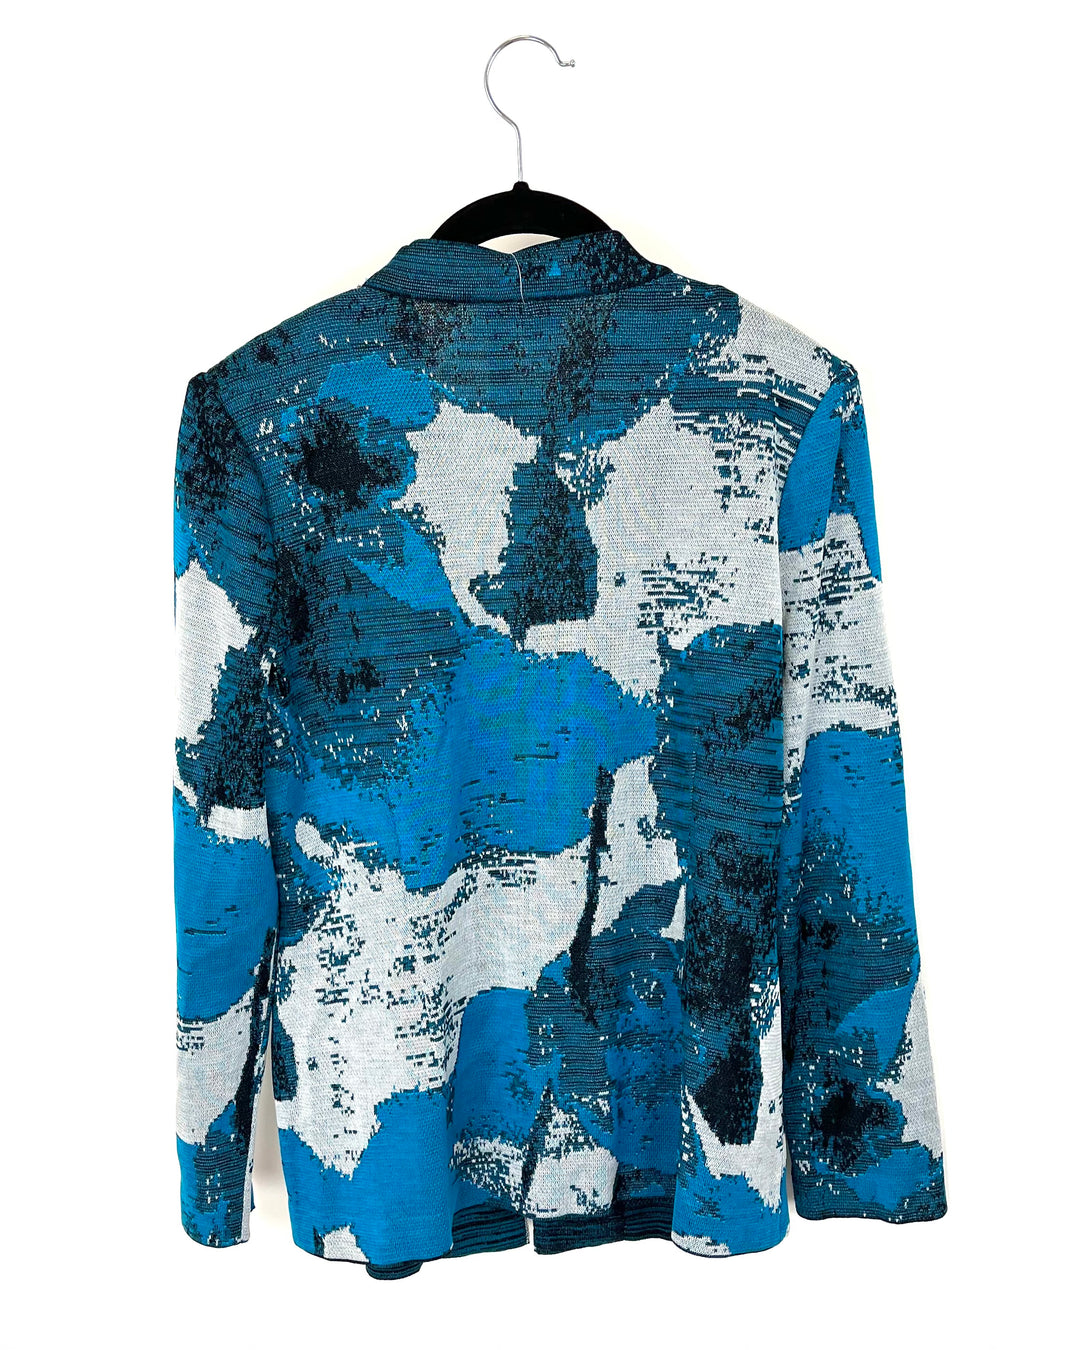 Blue Floral Accent Jacket - Size 2-4